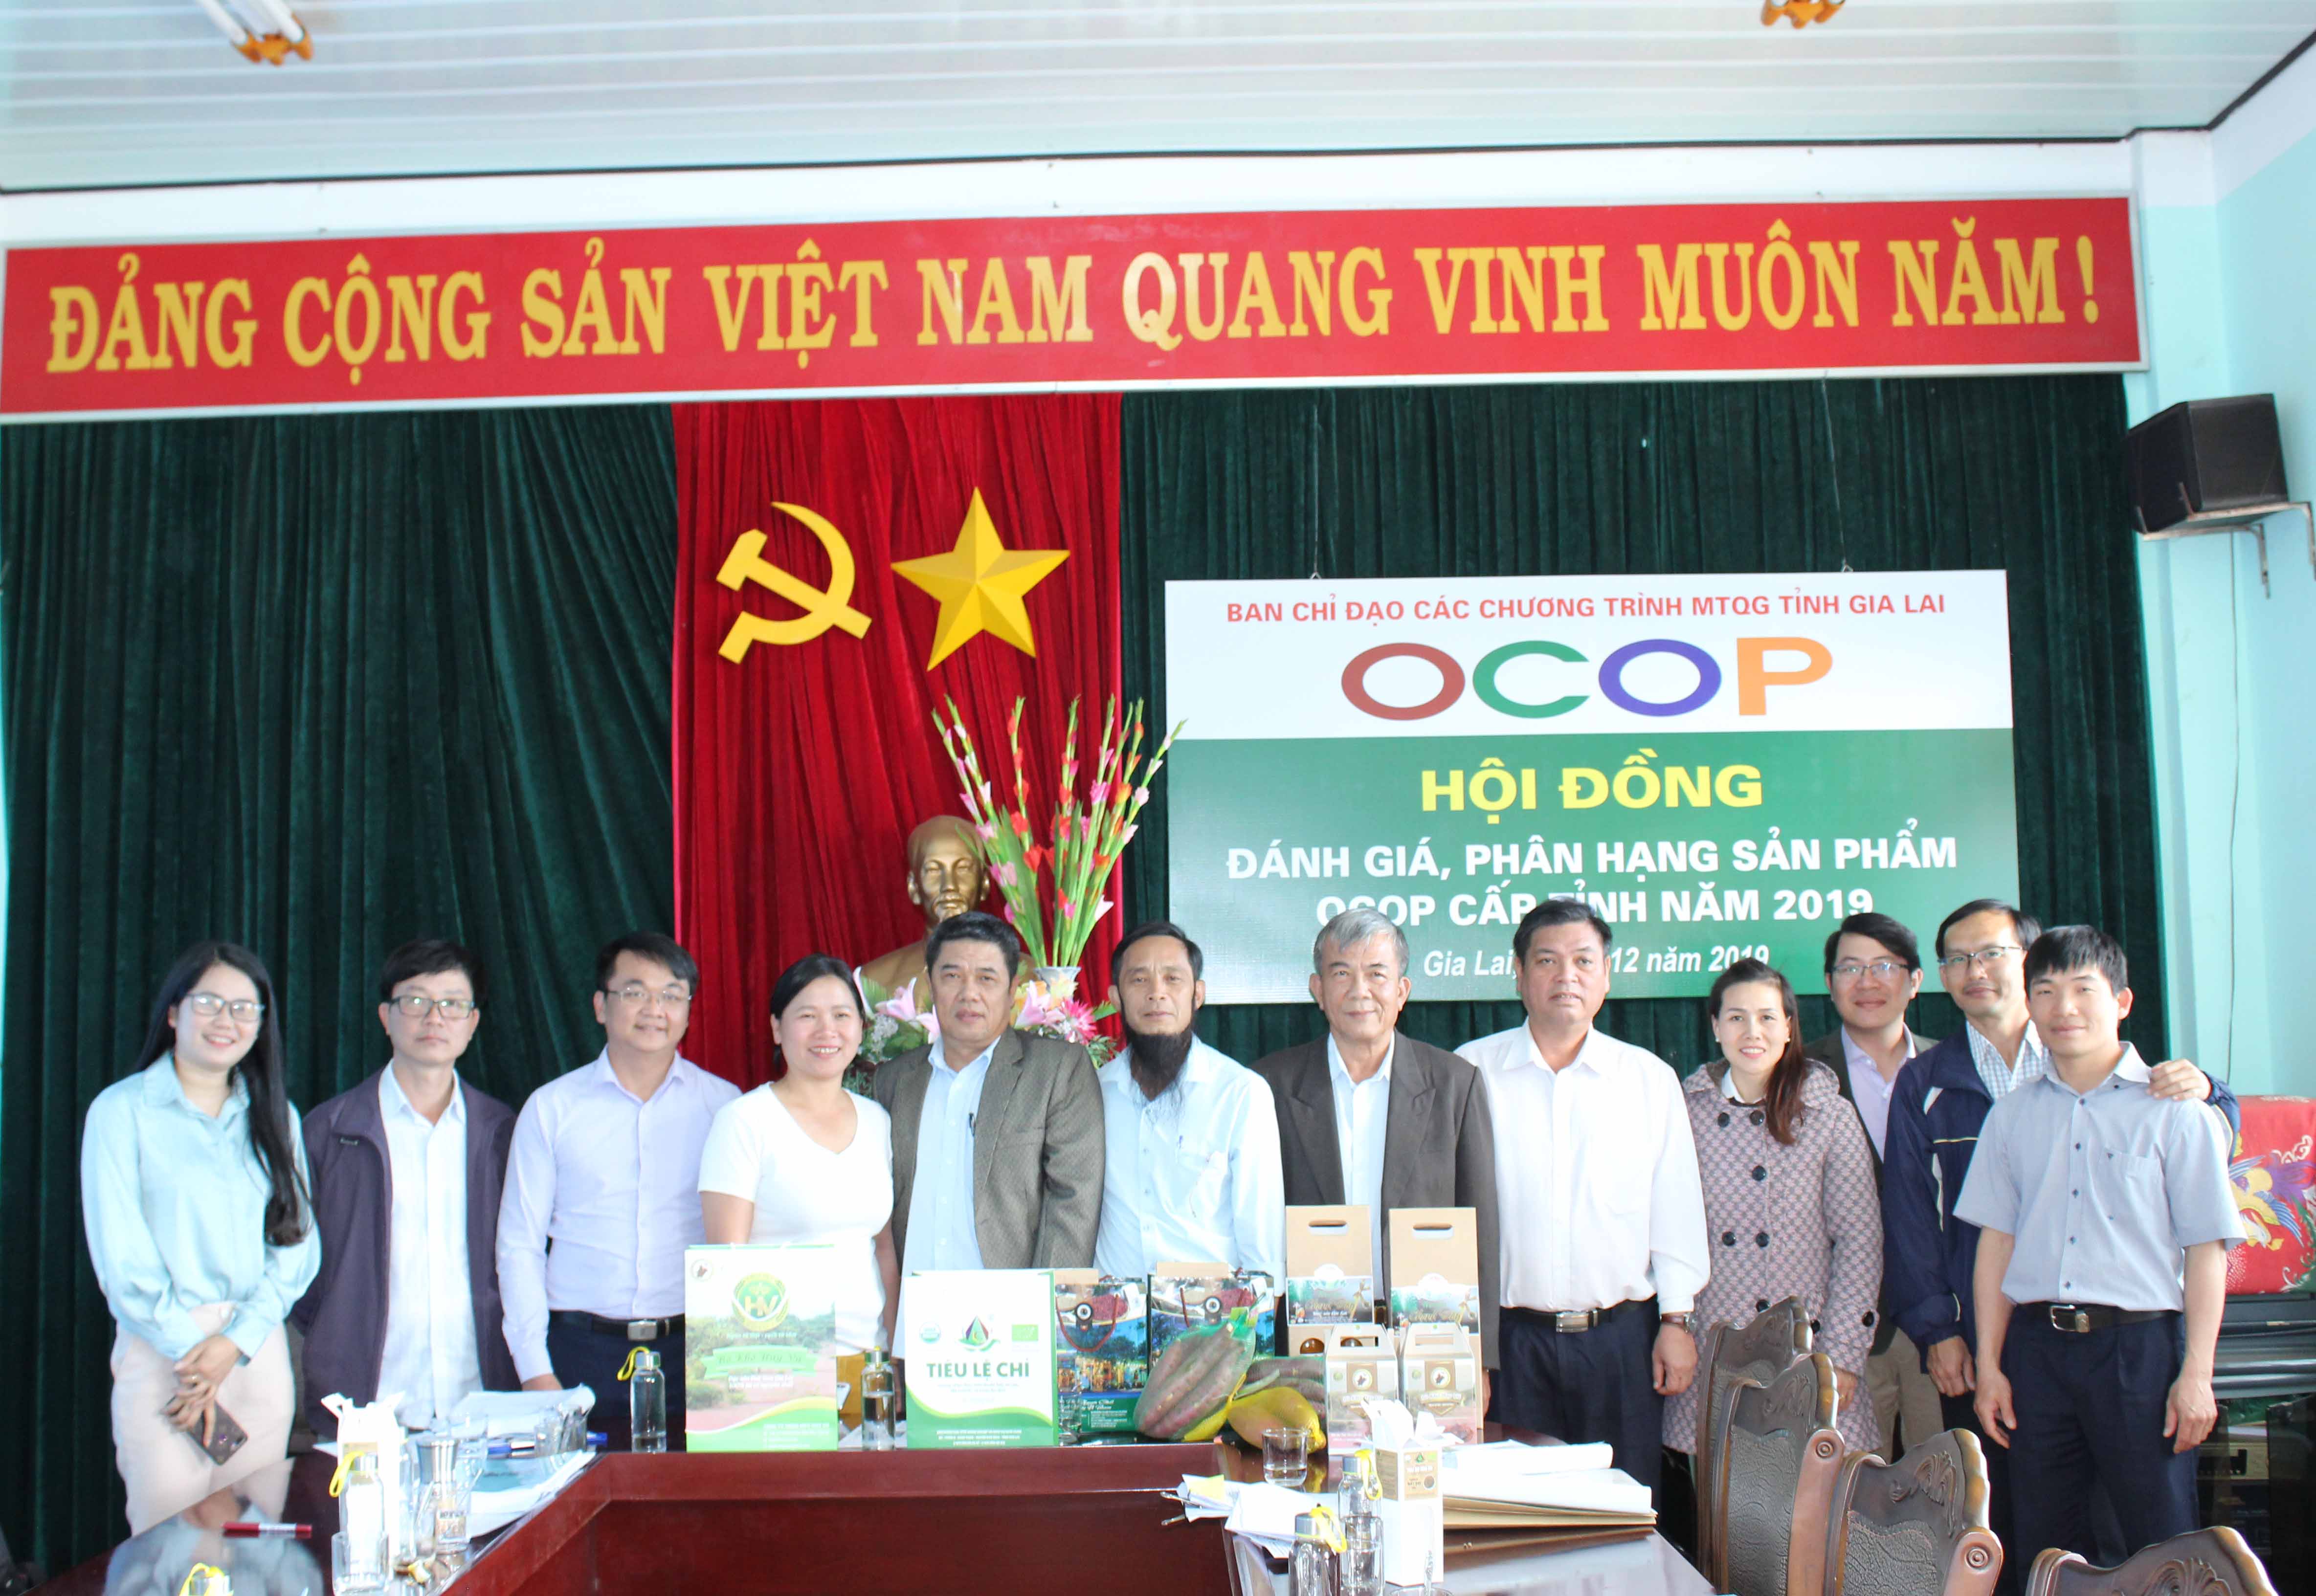  Hội đồng đánh giá phân hạng sản phẩm OCOP cấp tỉnh. Ảnh: Nguyễn Diệp